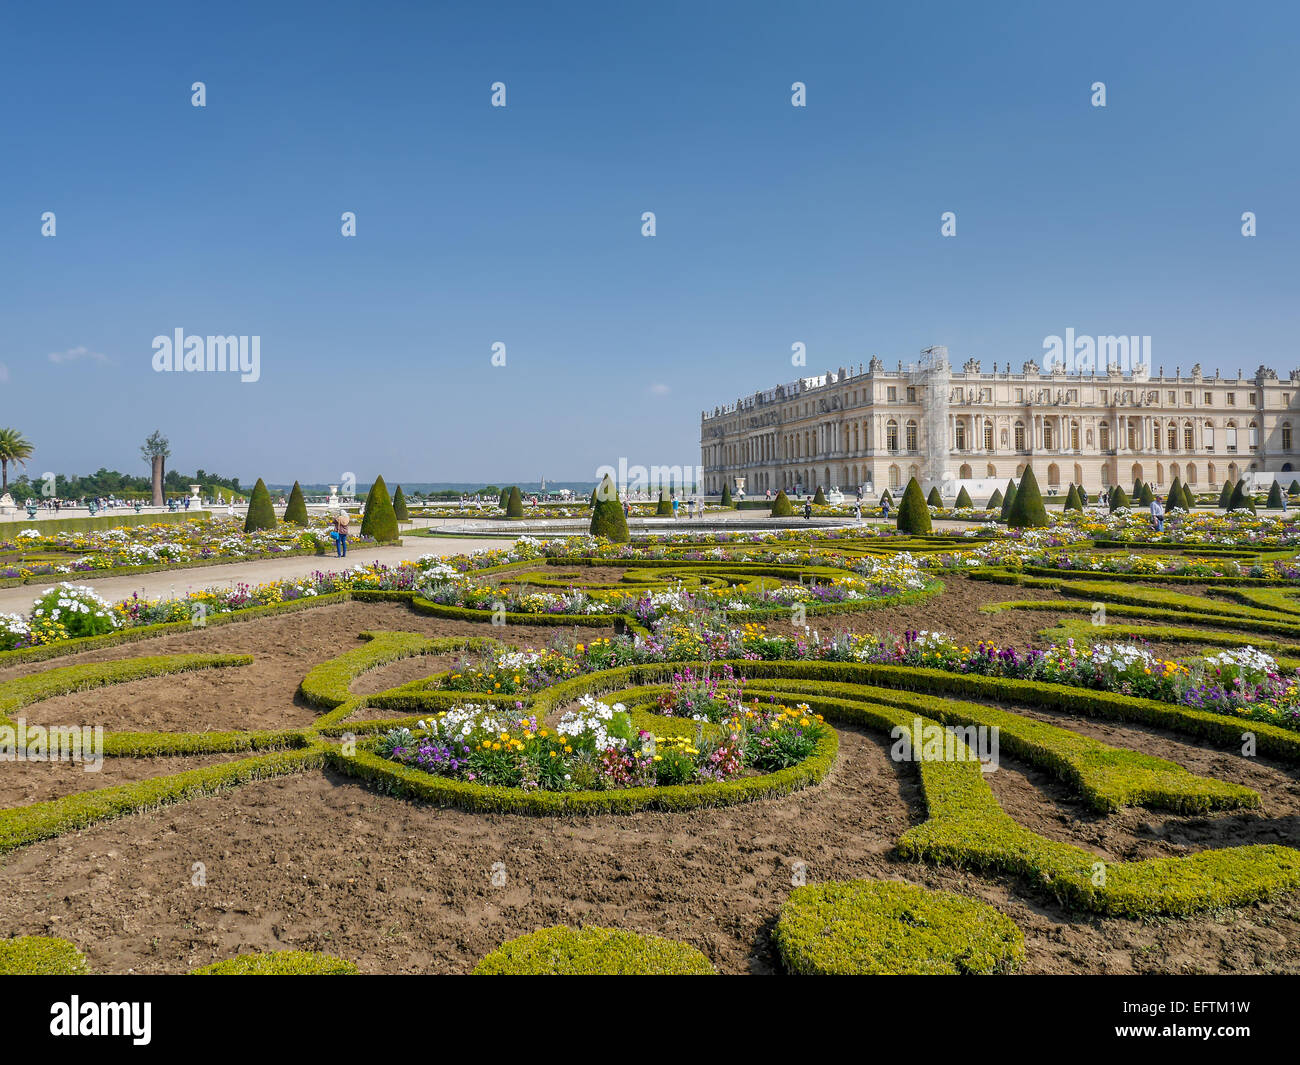 Plaqués parterre dans le jardin de Versailles Palais de Versailles avec en arrière-plan, Versailles, France Banque D'Images